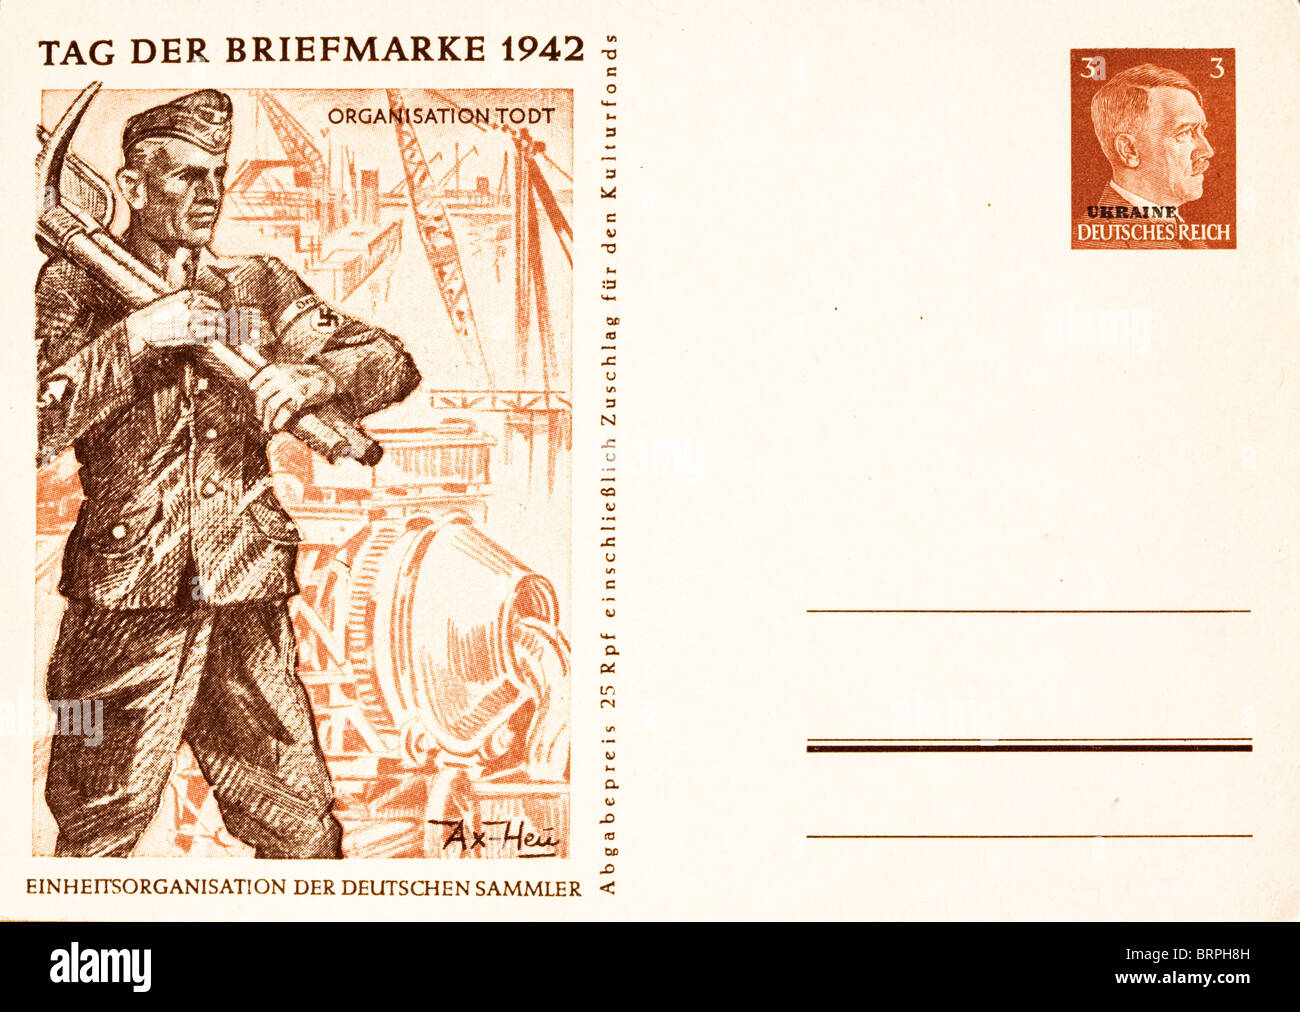 NS-Postkarte markiert 1942 Tag der Briefmarke zeigt Organisation Todt Arbeitskraft schwingende Spitzhacke. Ukrainische Briefmarke Stockfoto